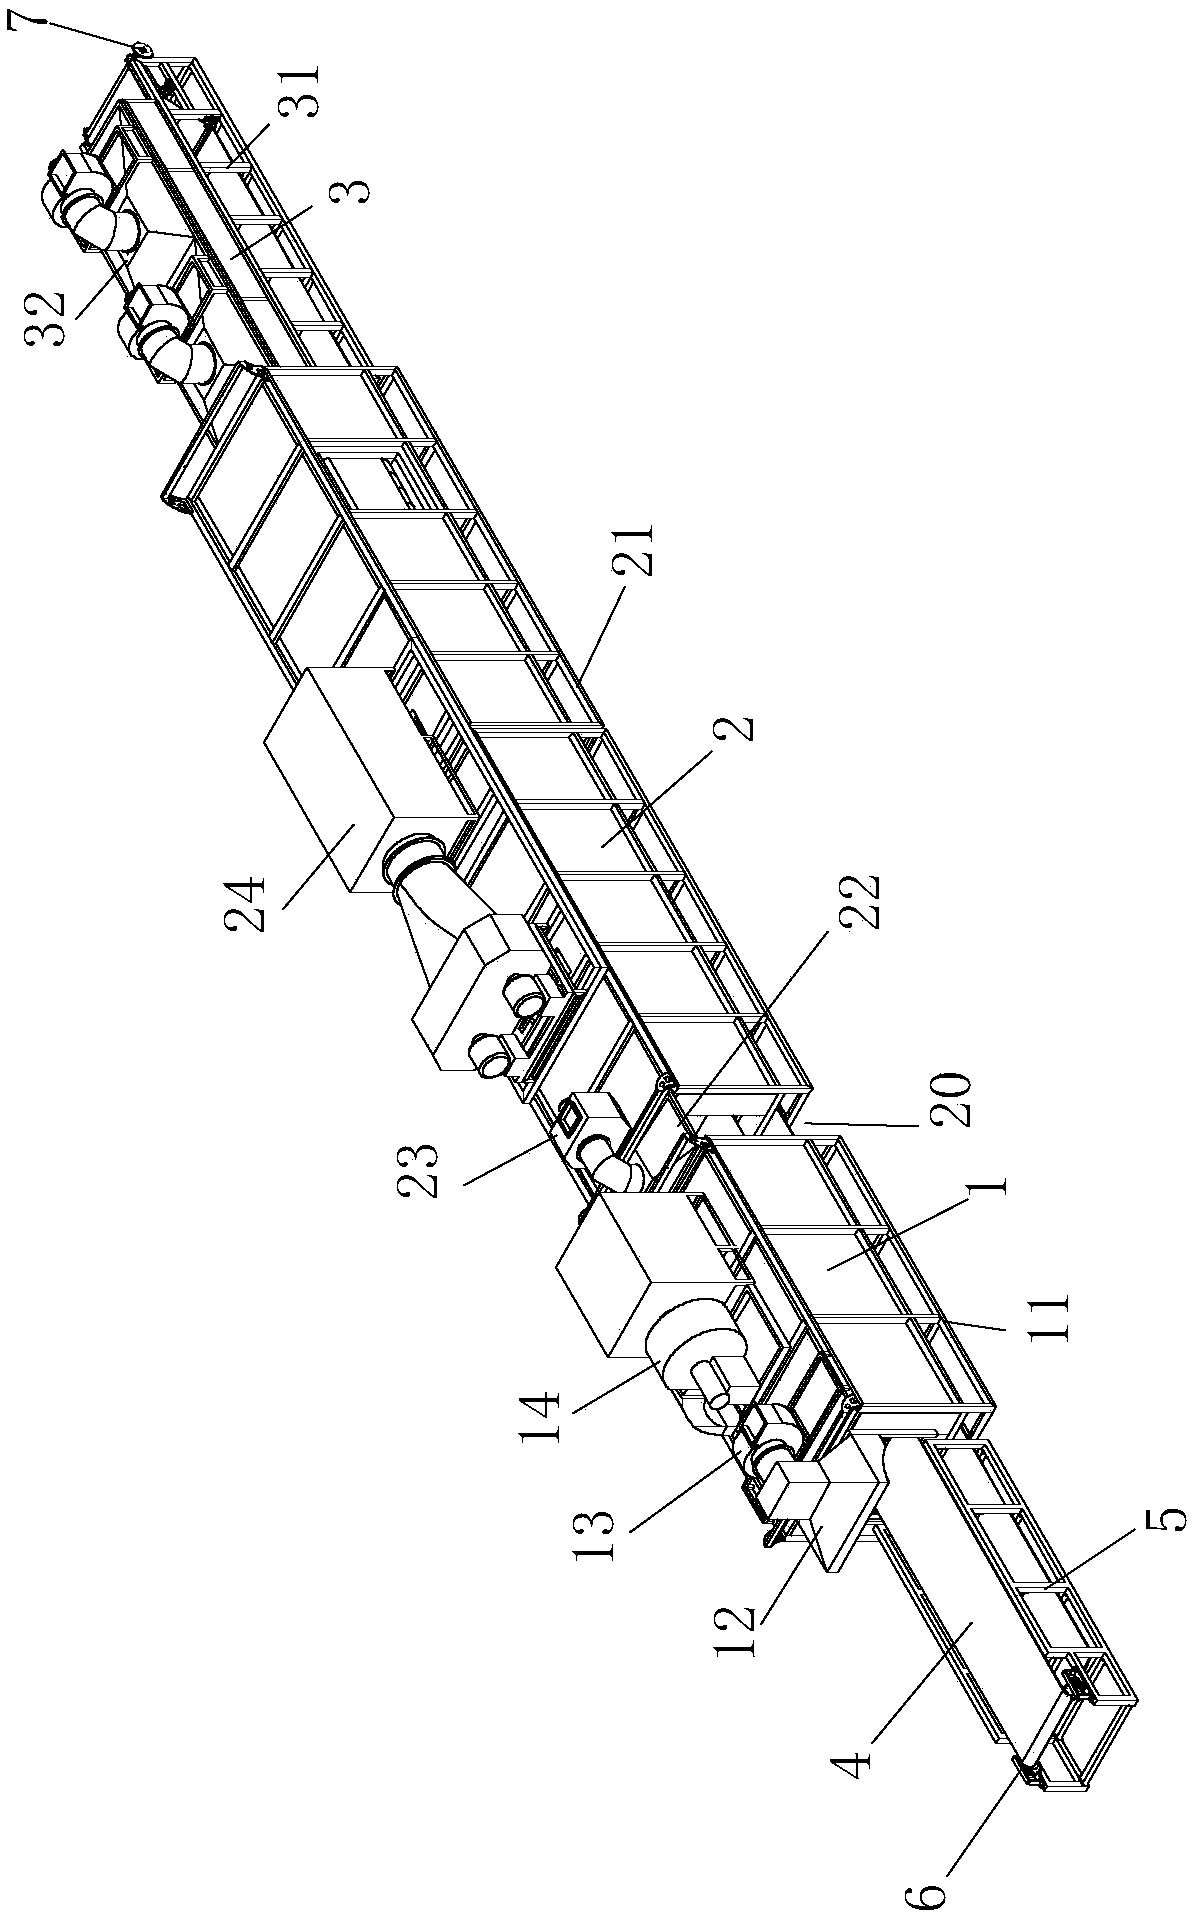 Net belt type sintering furnace